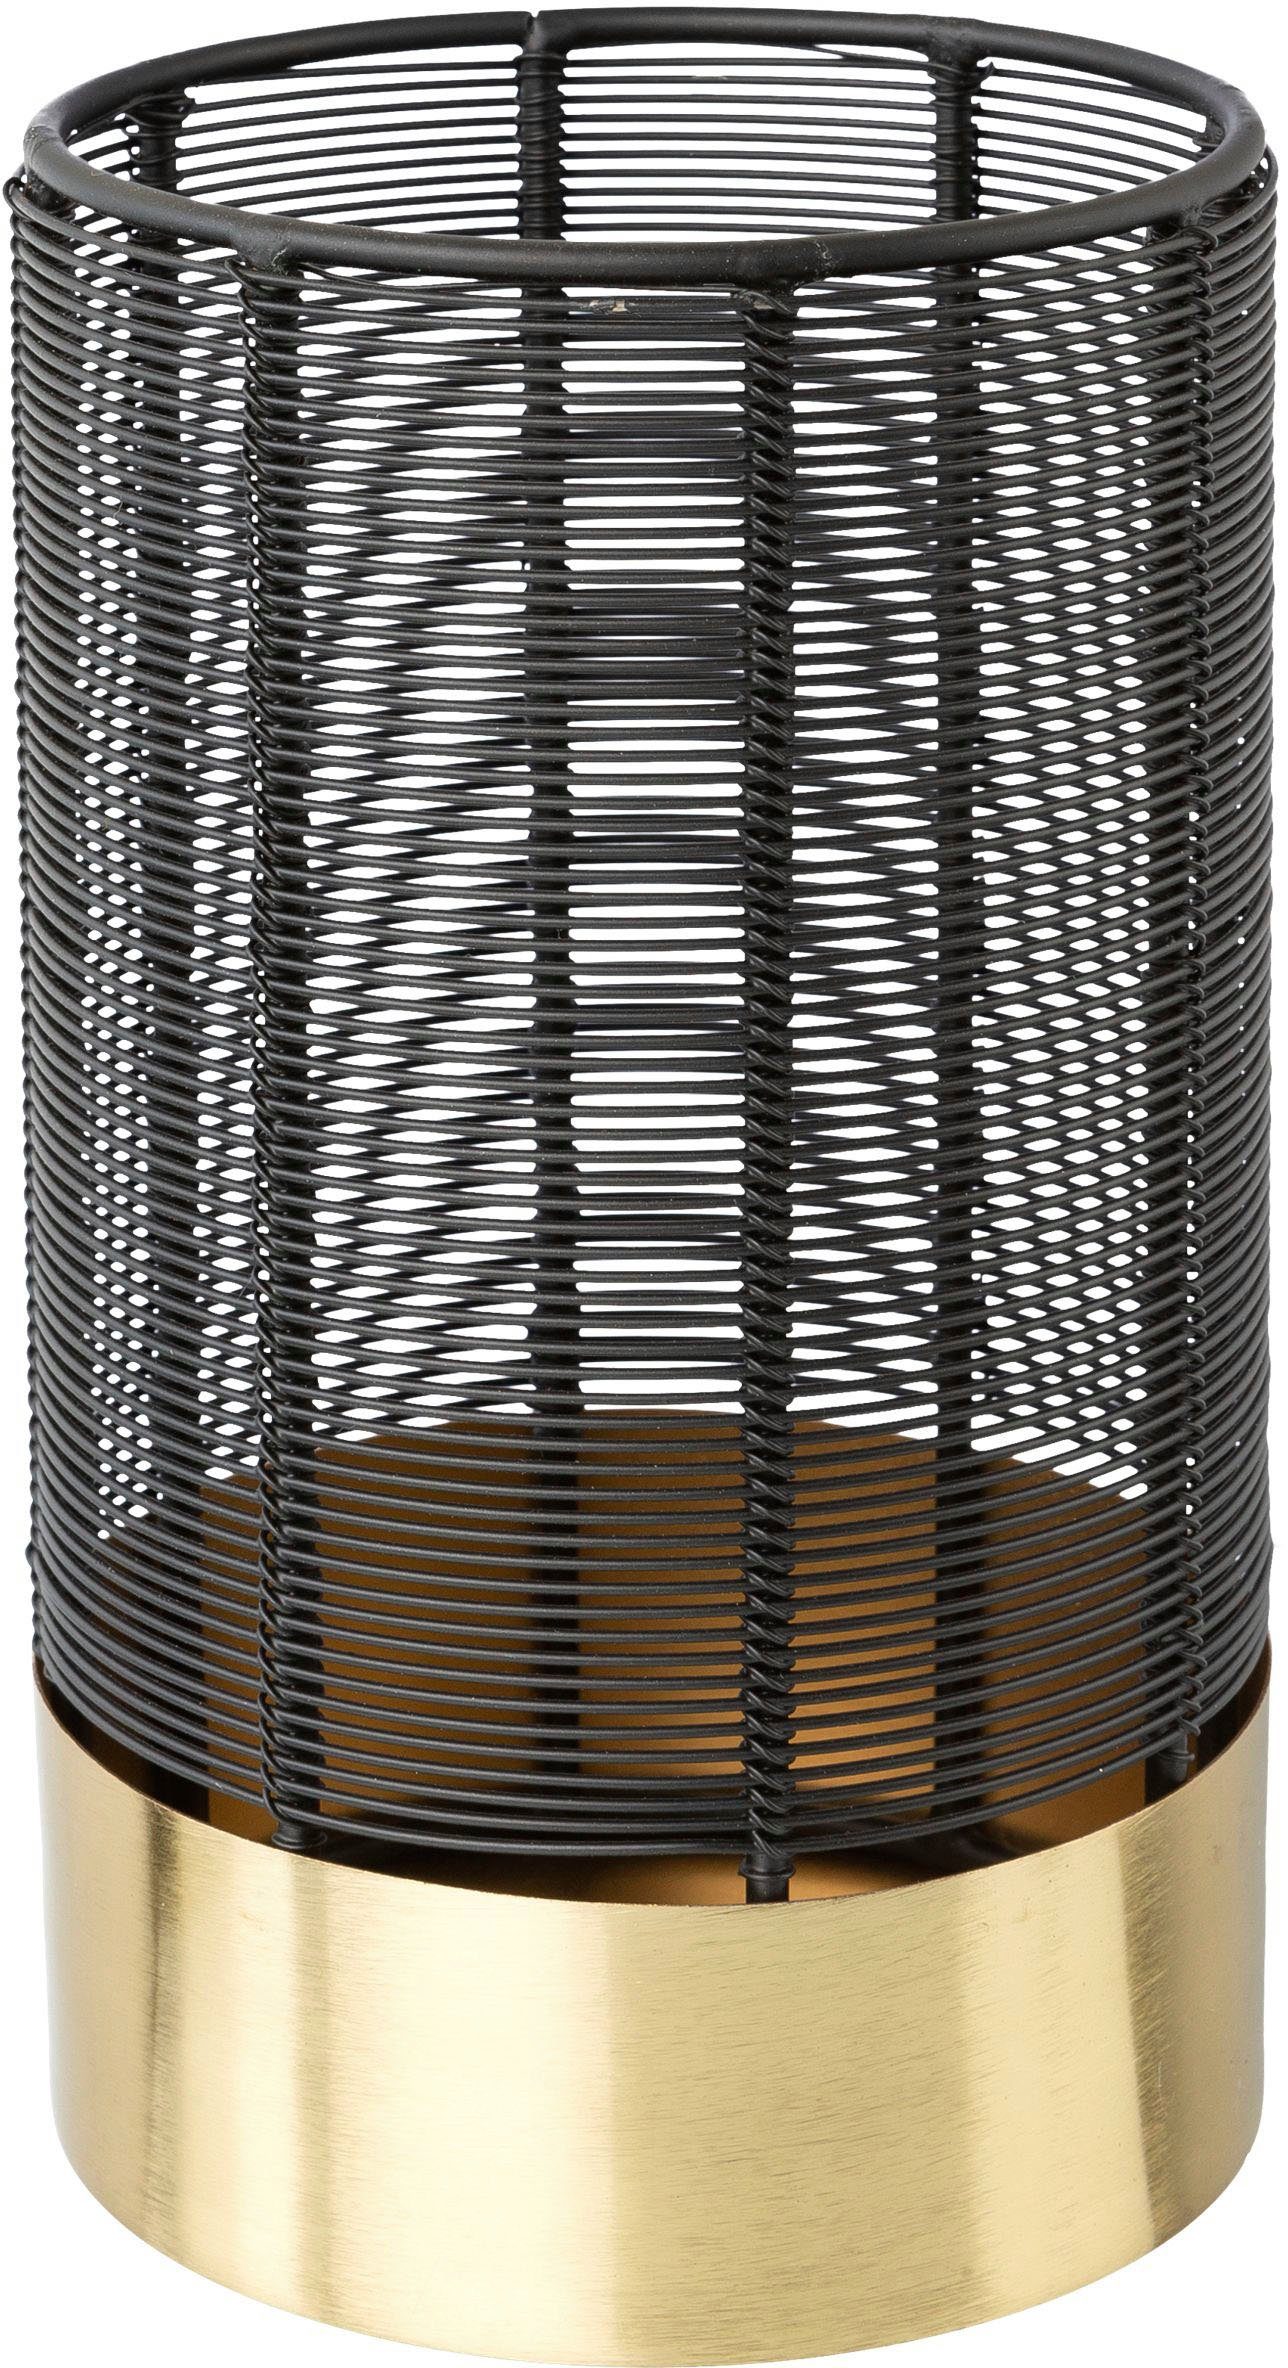 Leonique Windlicht Kerzenhalter Alienor (1 St), aus Metall, mit Draht-Struktur schwarz-goldfarben